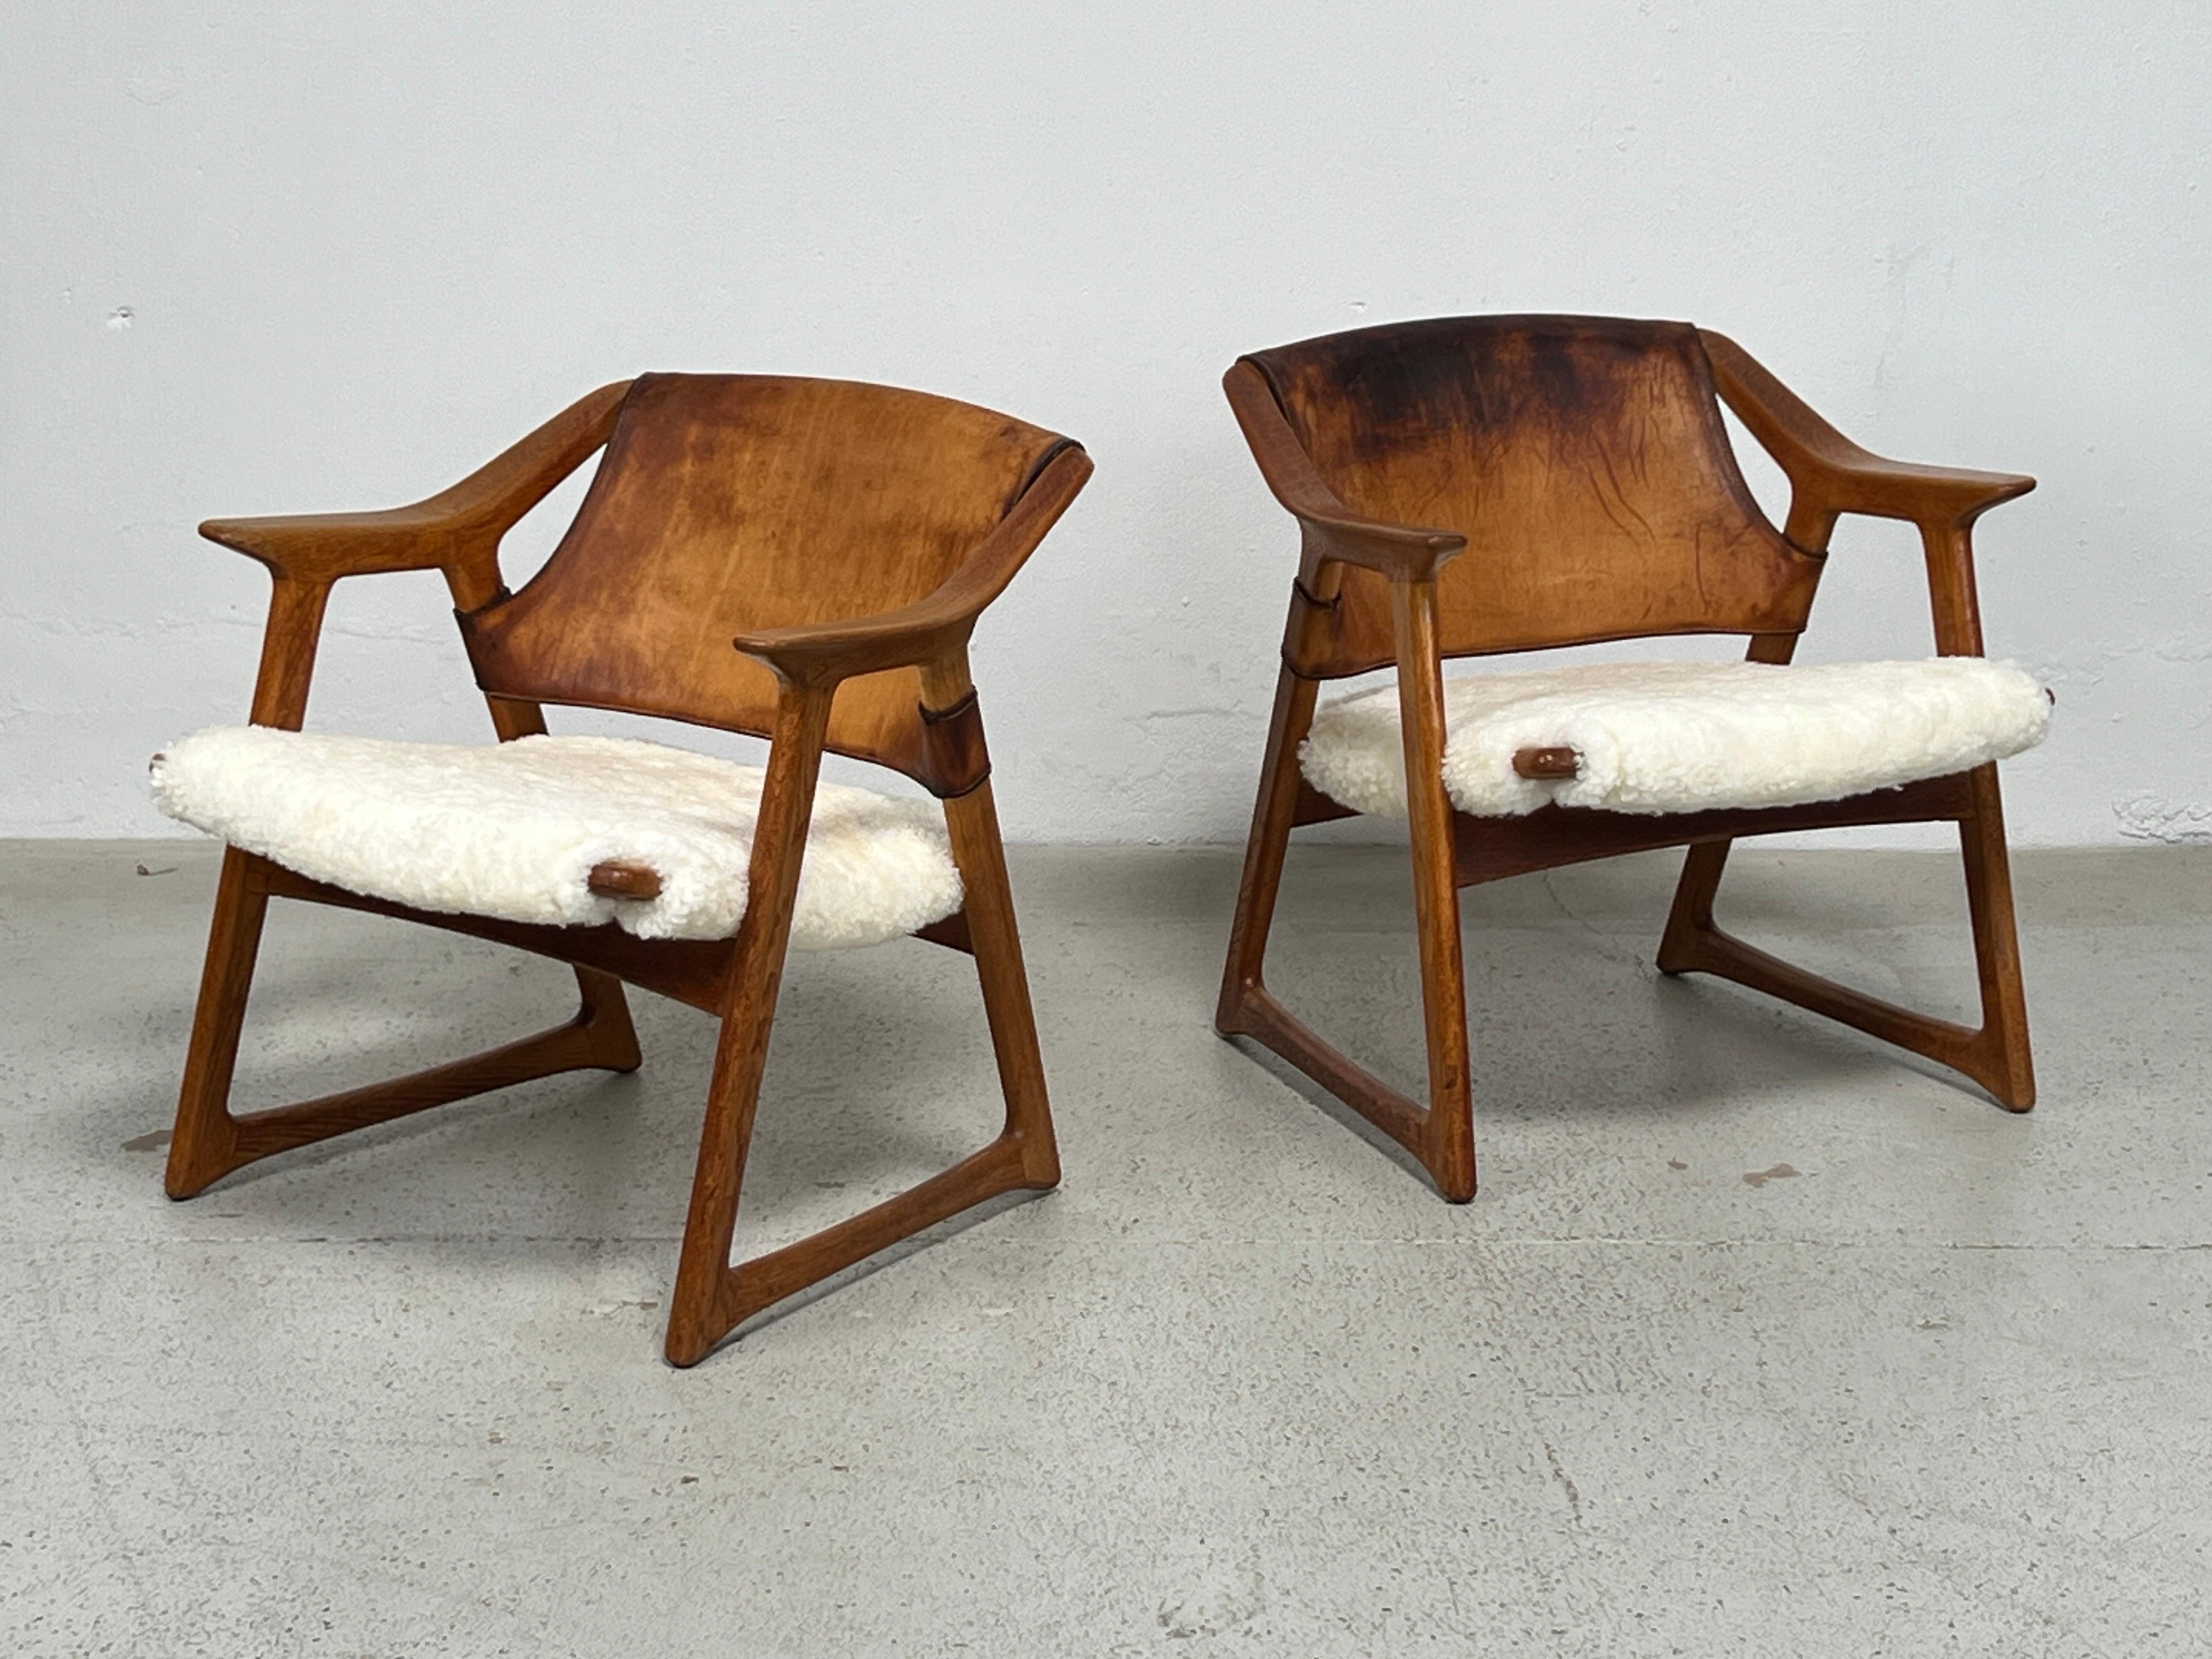 Rare paire de chaises 'Fox' conçues par Rolf Hesland en 1958. Les cadres en chêne ont une riche patine et une réparation ancienne sur un bras, comme le montrent les photos. Le cuir d'origine est très patiné mais sa structure est saine. Les sièges